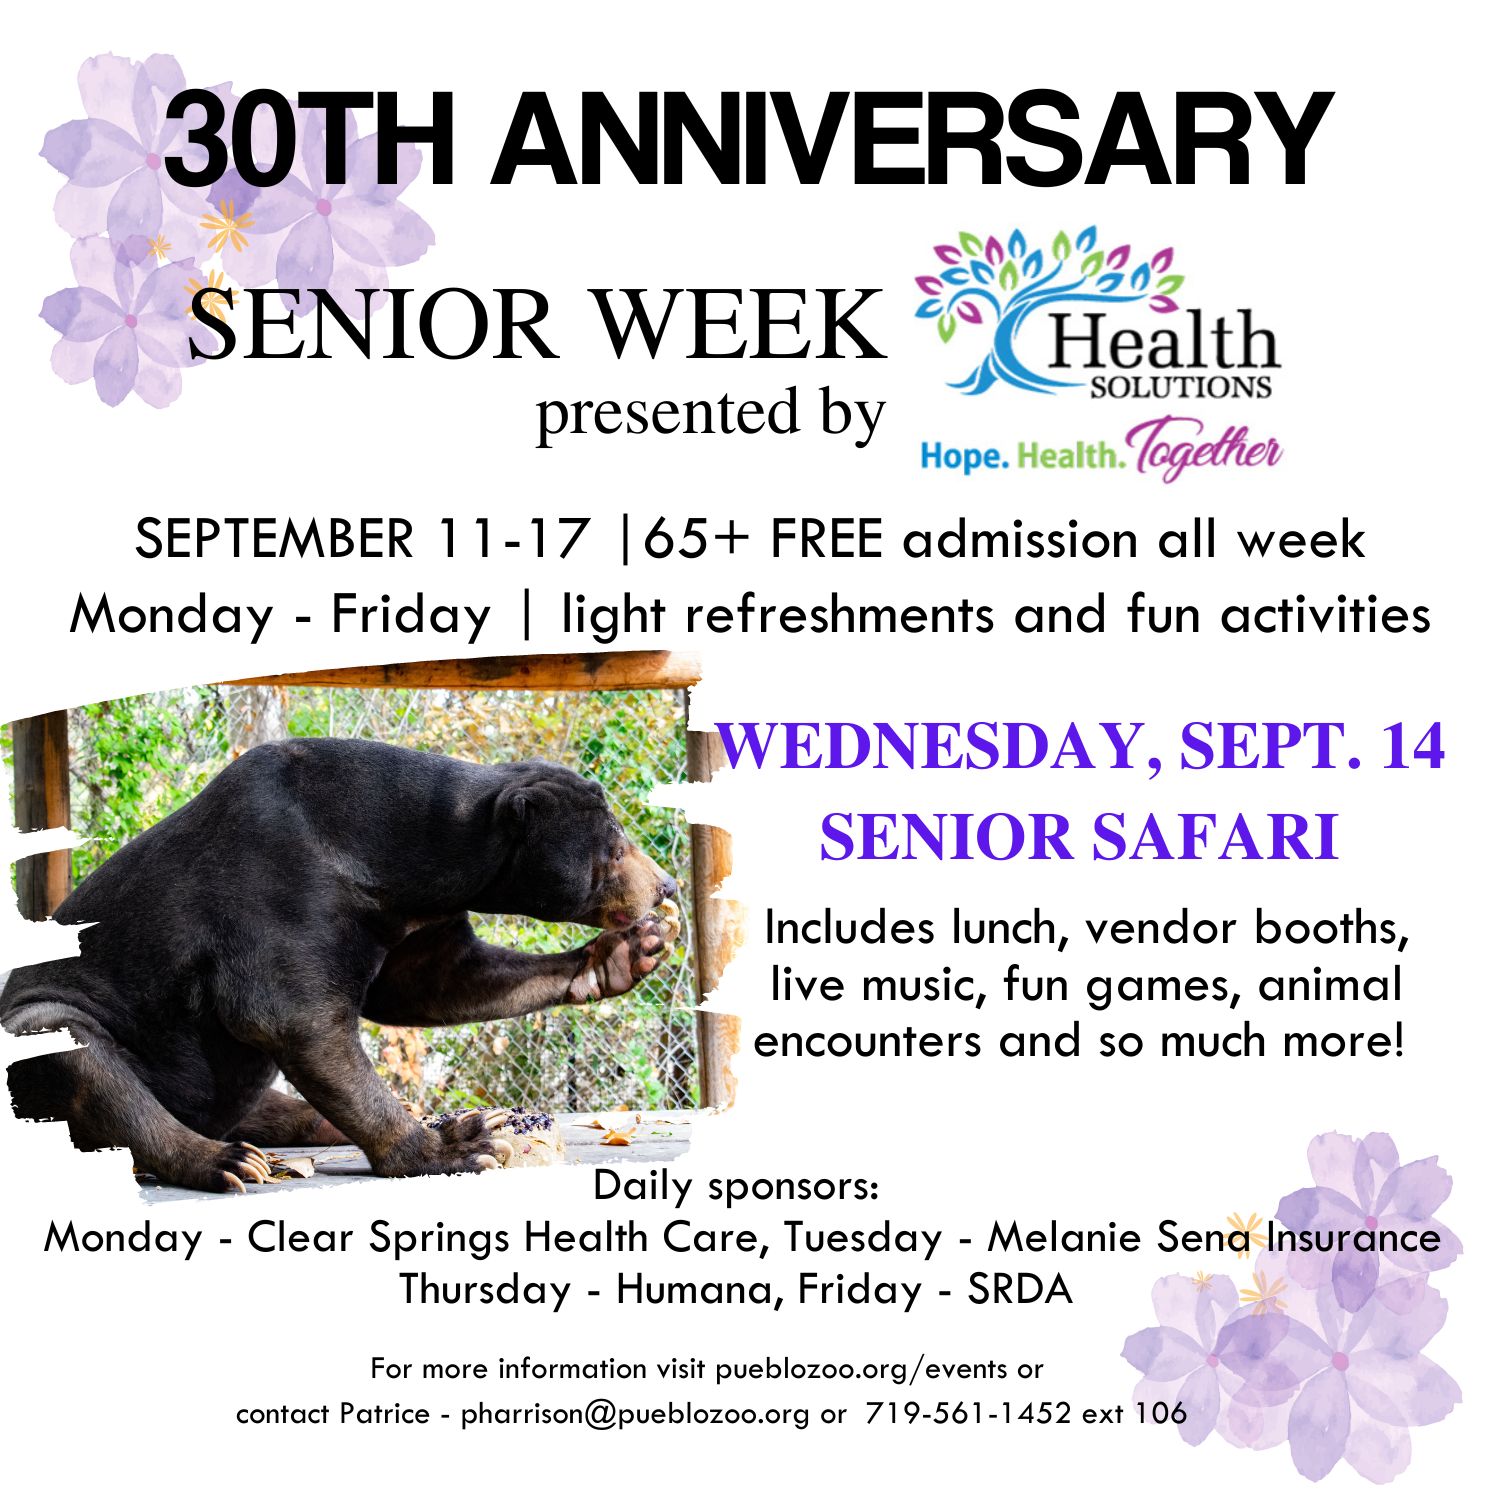 Senior Week presented by Health Solutions